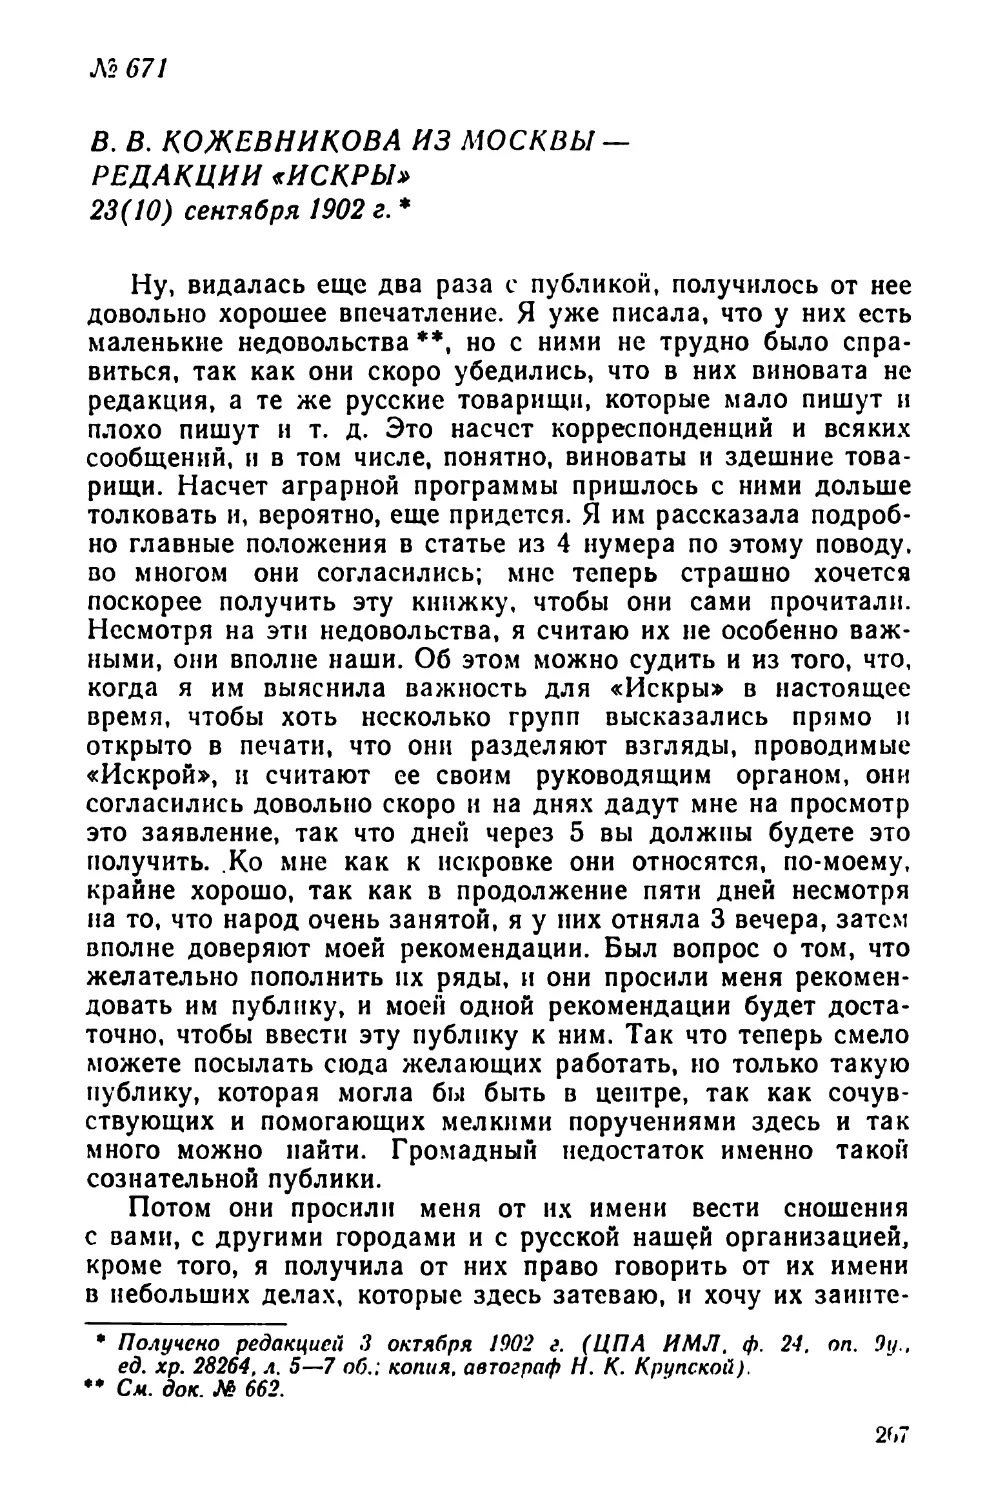 № 671 В. В. Кожевникова из Москвы— редакции «Искры». 23 сентября